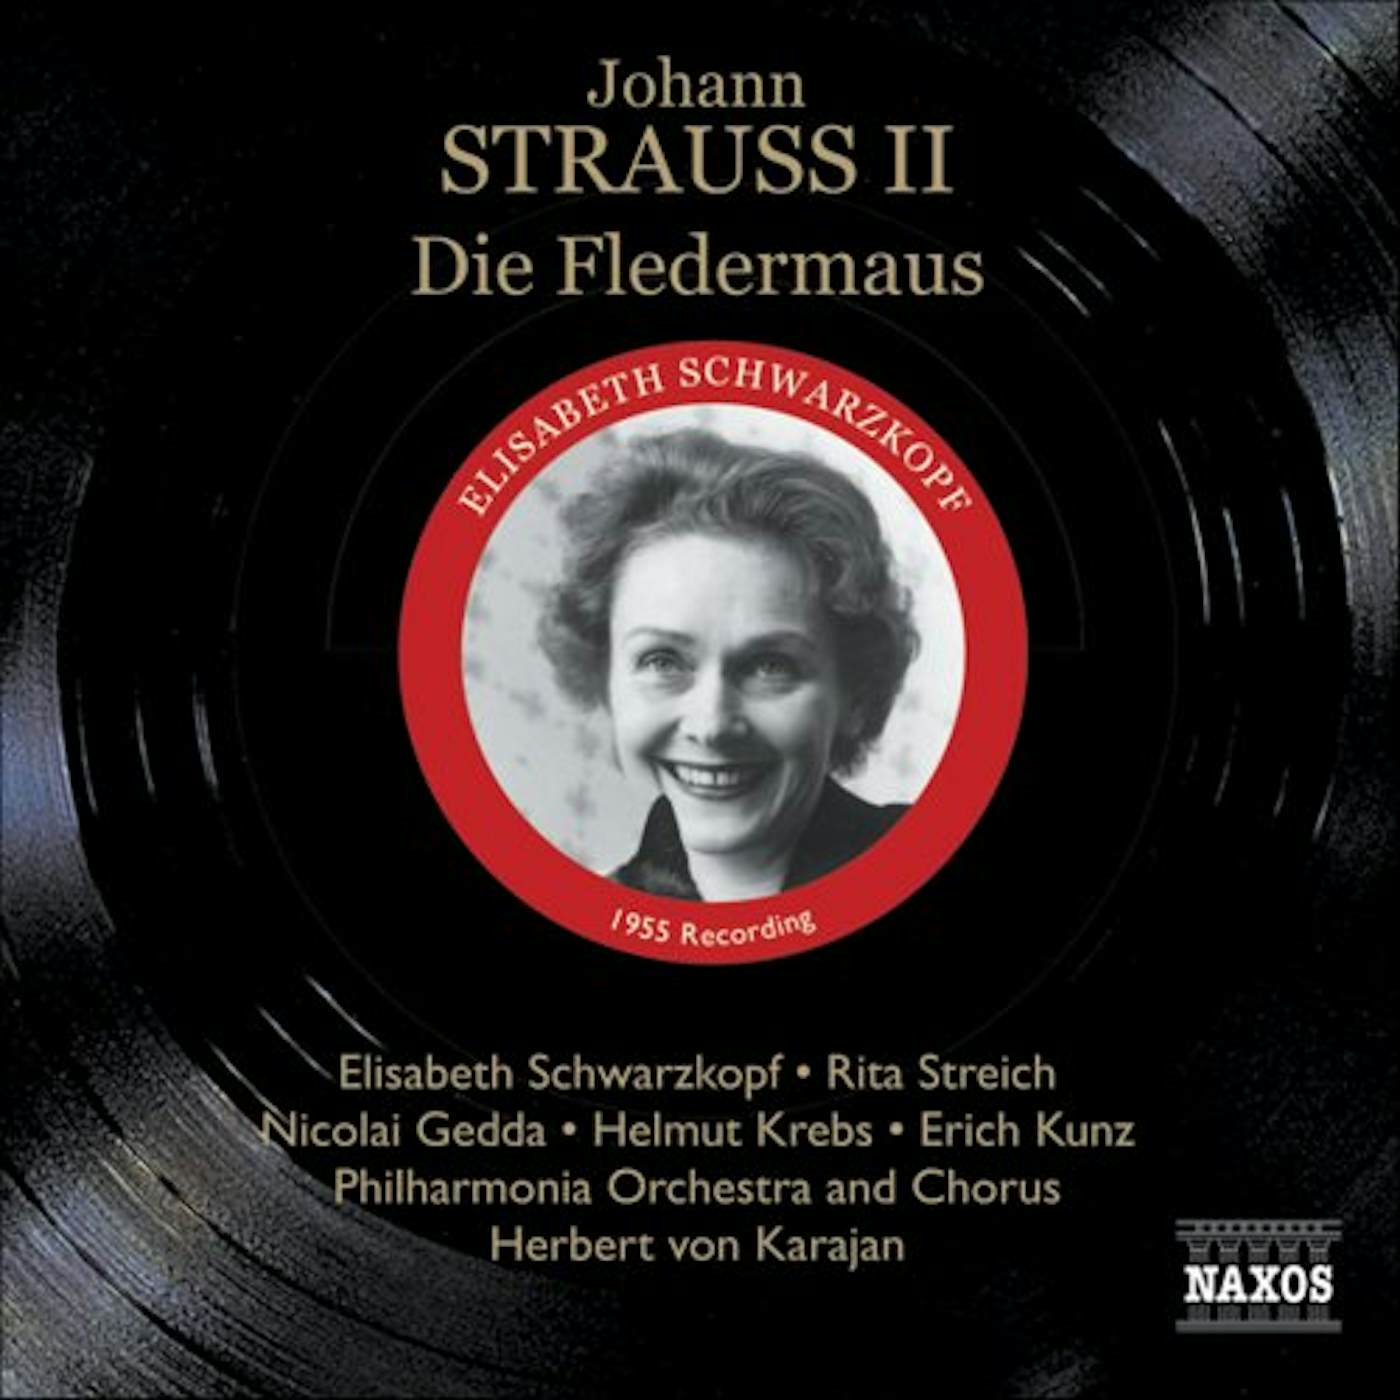 J. Strauss FLEDERMAUS DIE CD